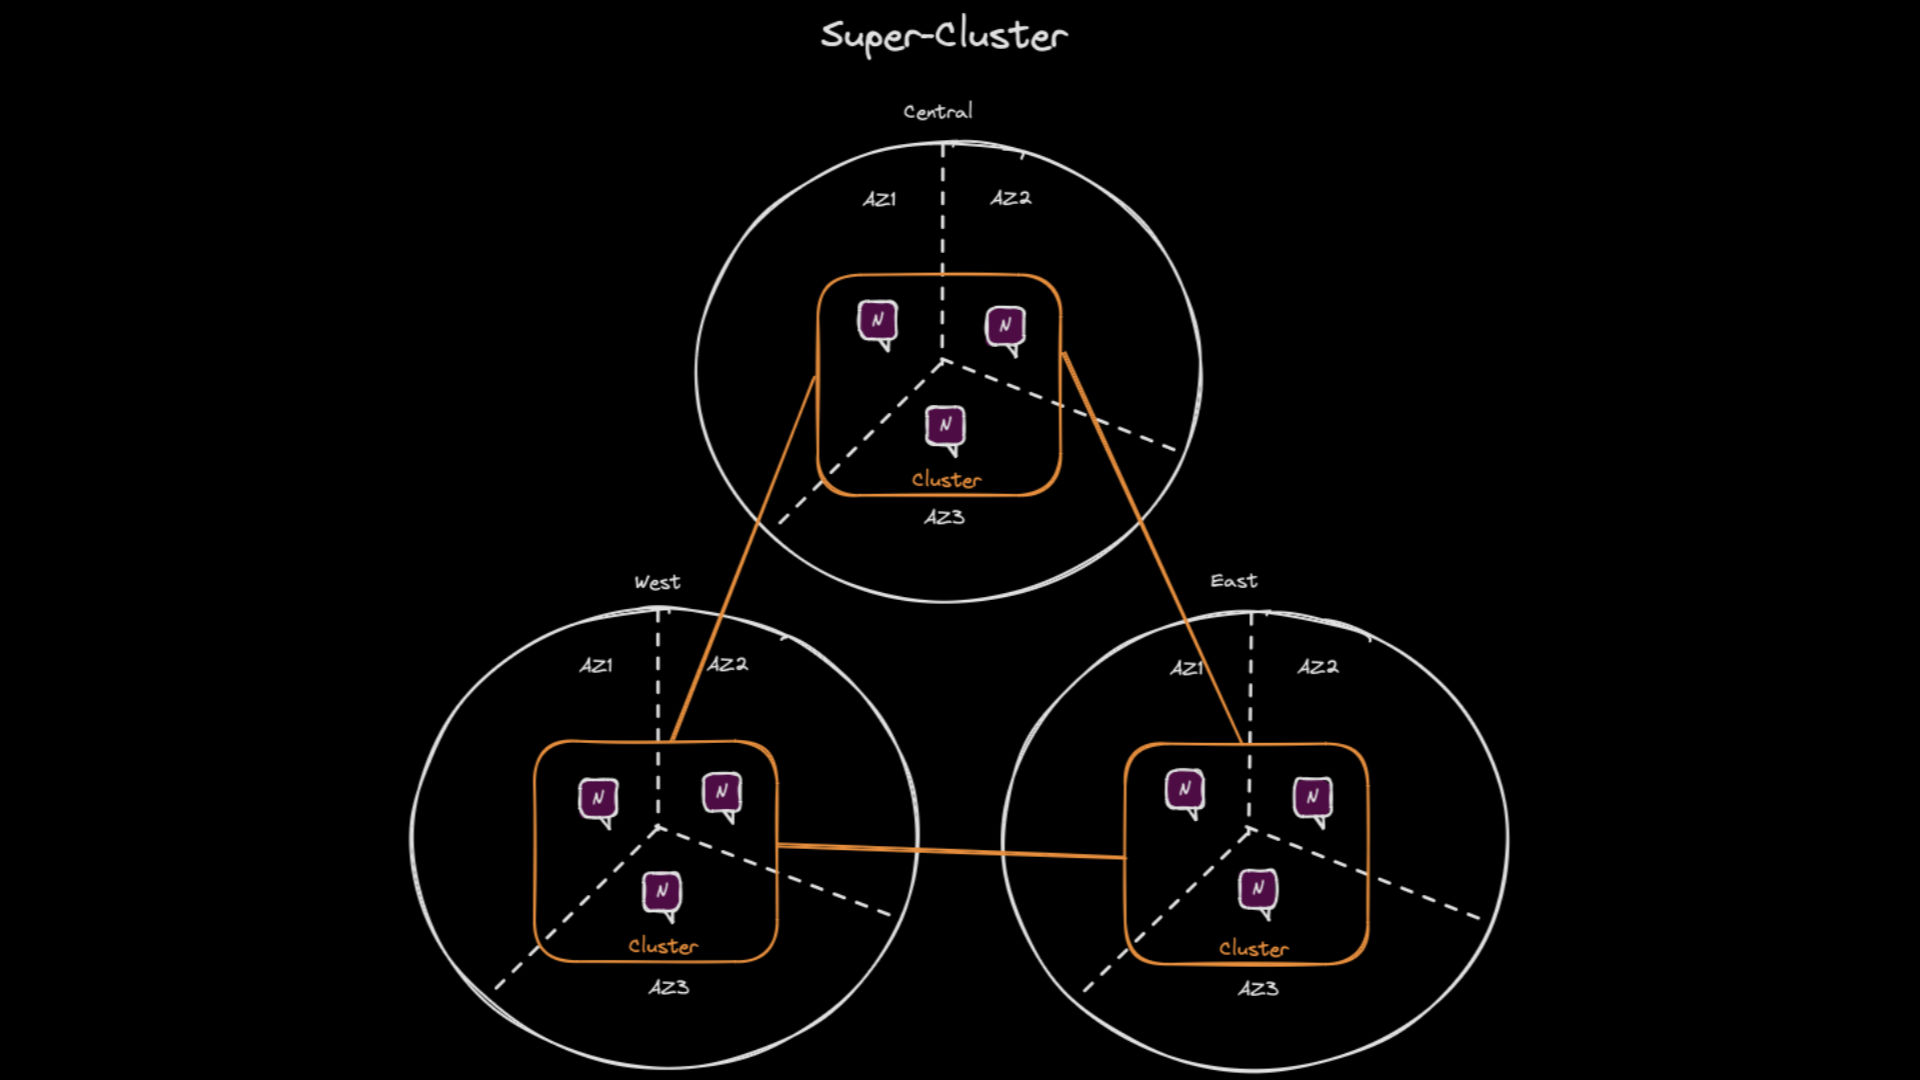 Super-Cluster